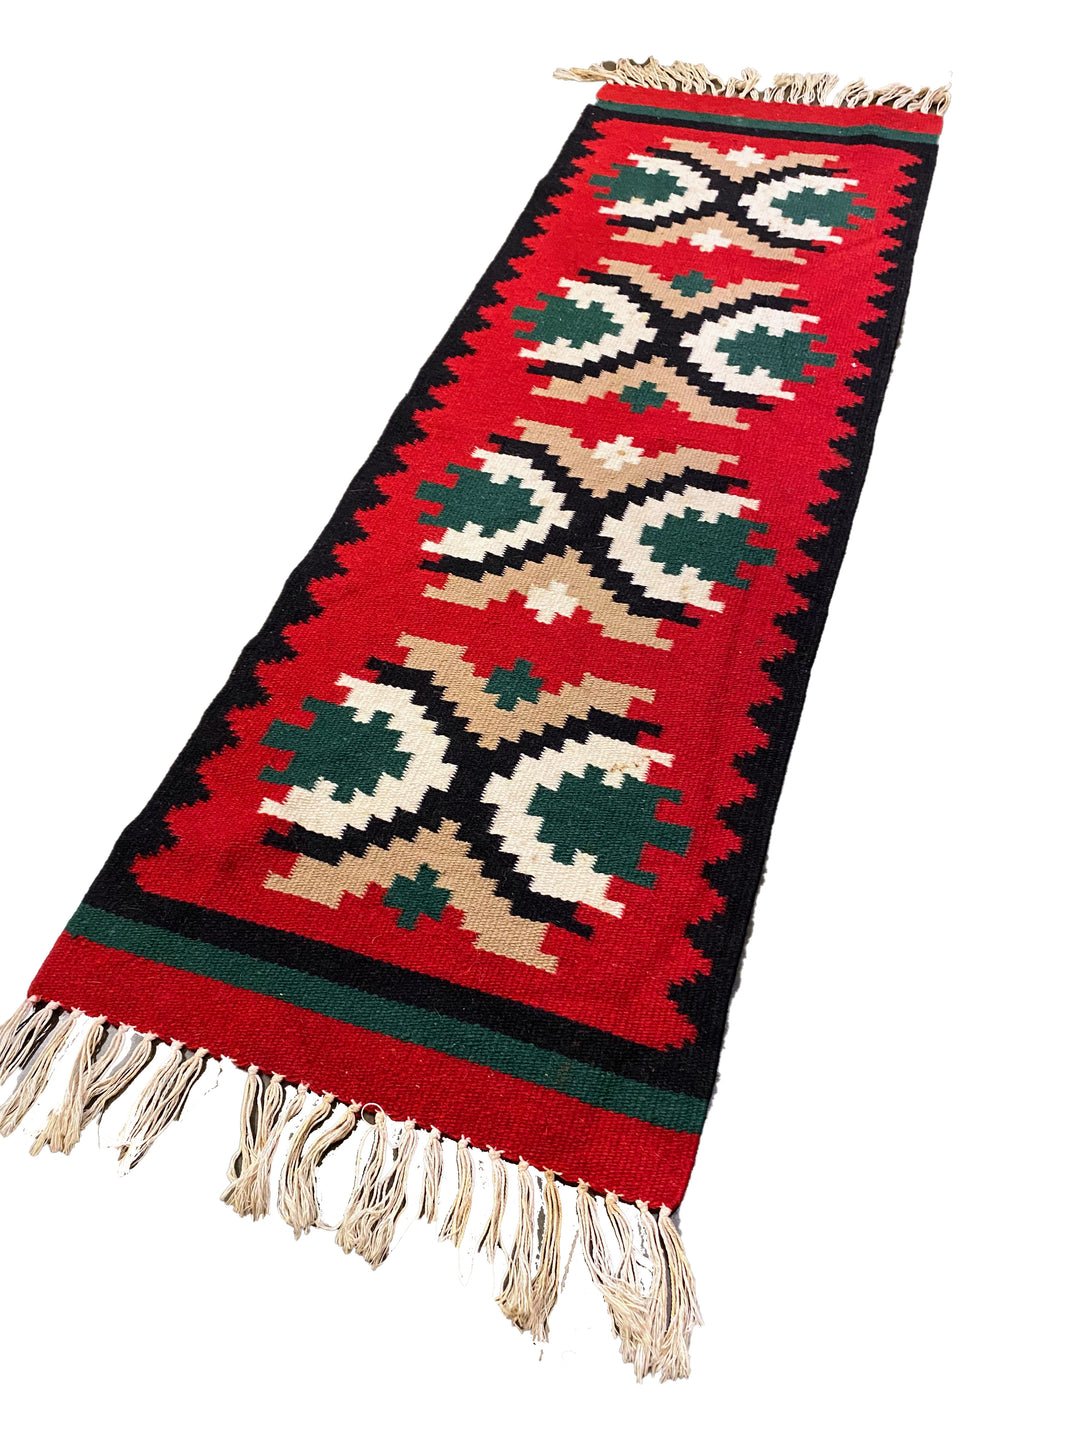 Bozkir - Size: 3.9 x 1.3 - Imam Carpet Co